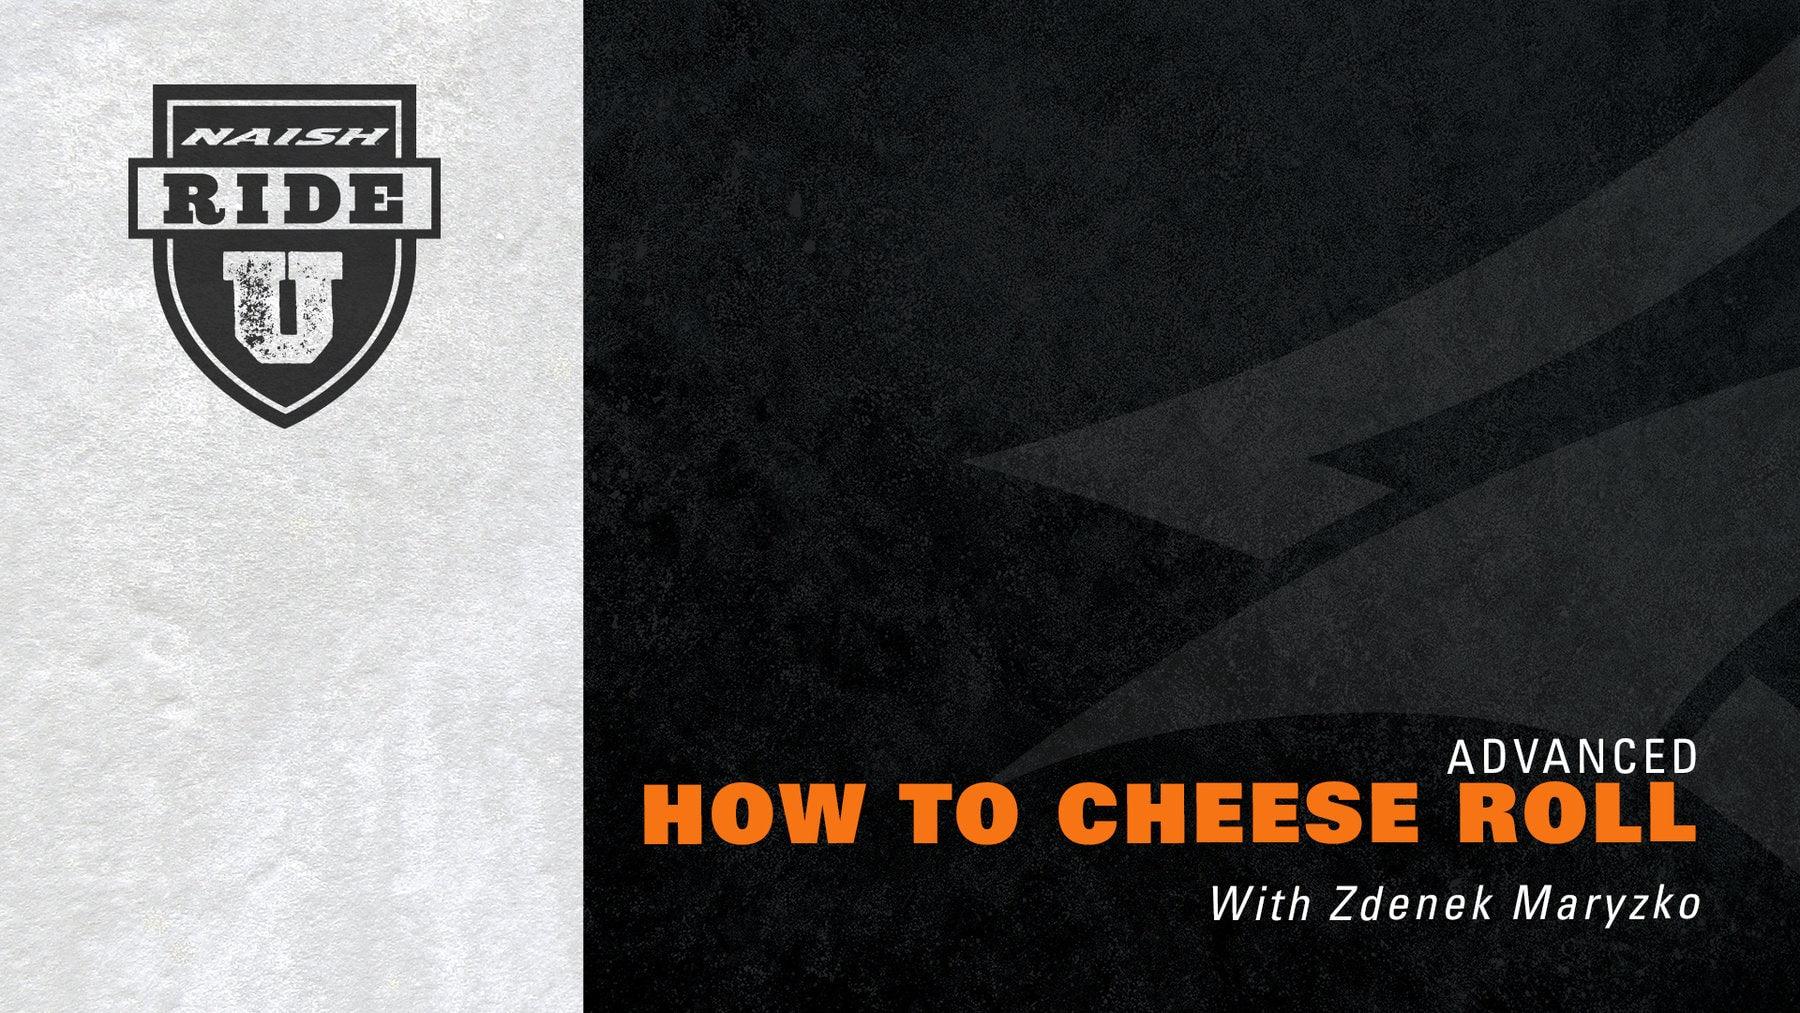 Naish Ride University: How to Cheese Roll with Zdenek Maryzko - Naish.com